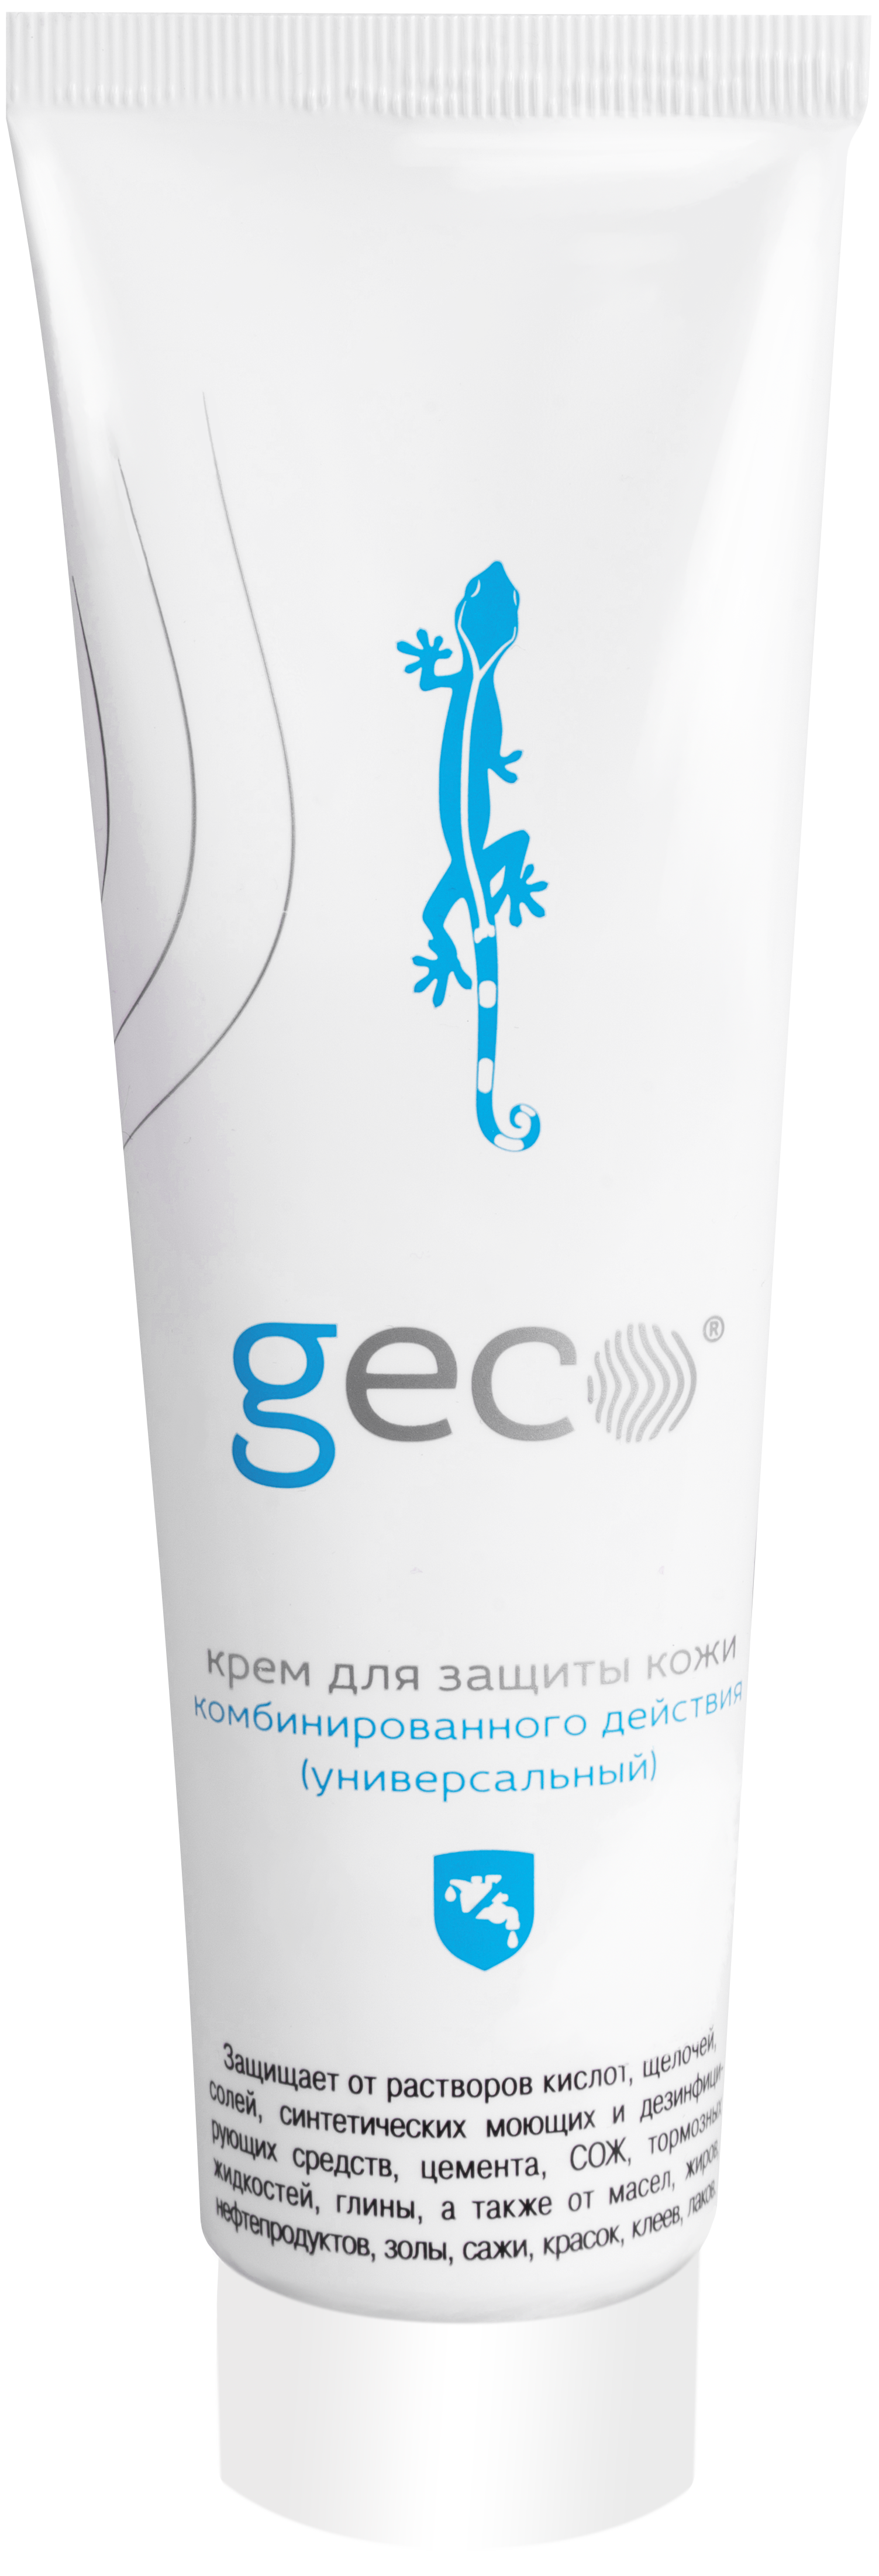 Для очистки рук от сильных загрязнений. Крем Geco гидрофобный 100 мл, (1210v) крем Geco гидрофобный 100 мл. Крем Geco гидрофильный 100 мл. Паста очищающая Geco. Крем Geco регенерирующий.